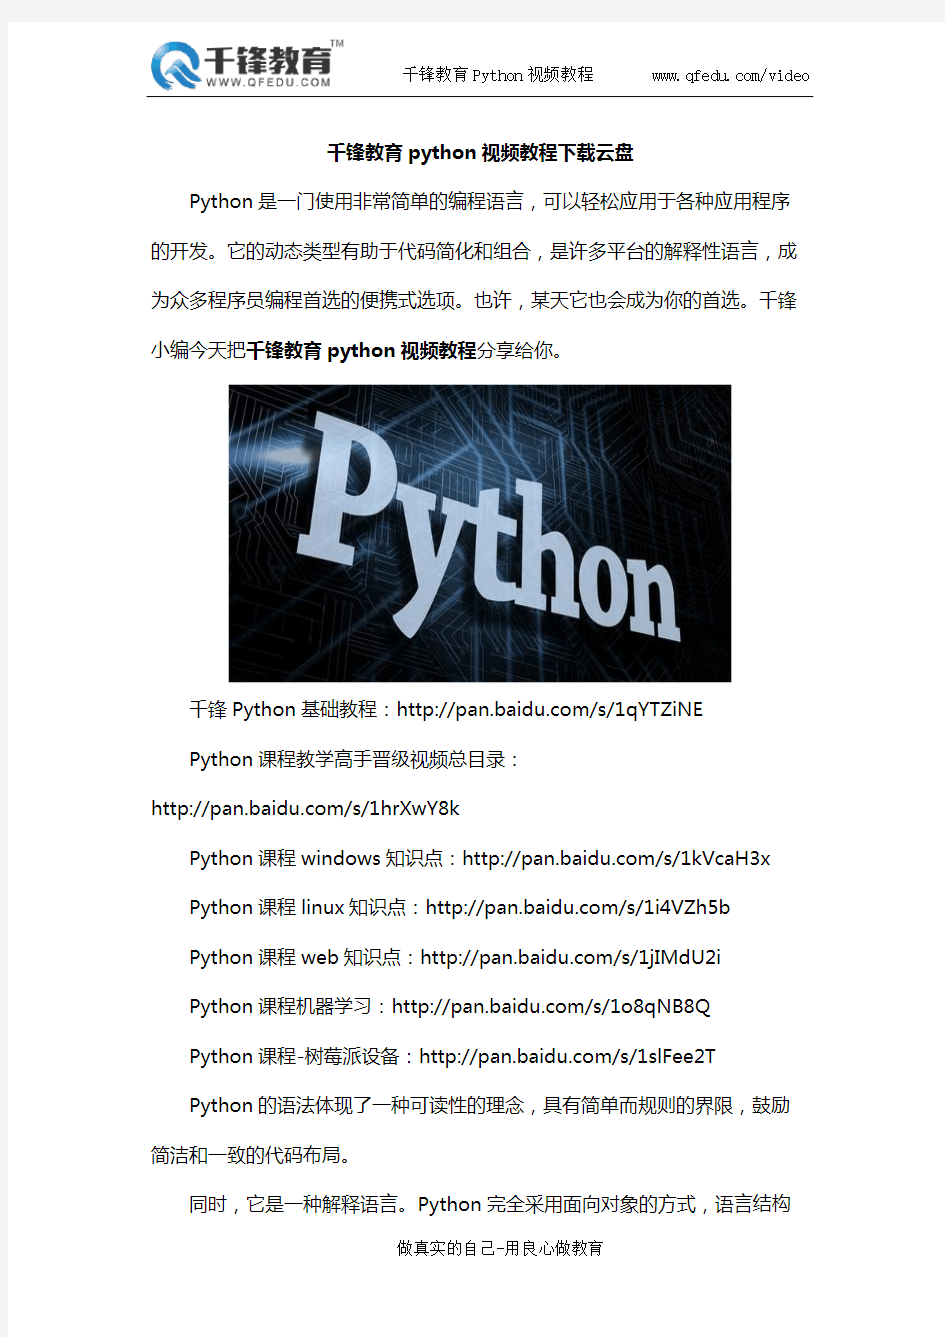 千锋教育python视频教程下载云盘